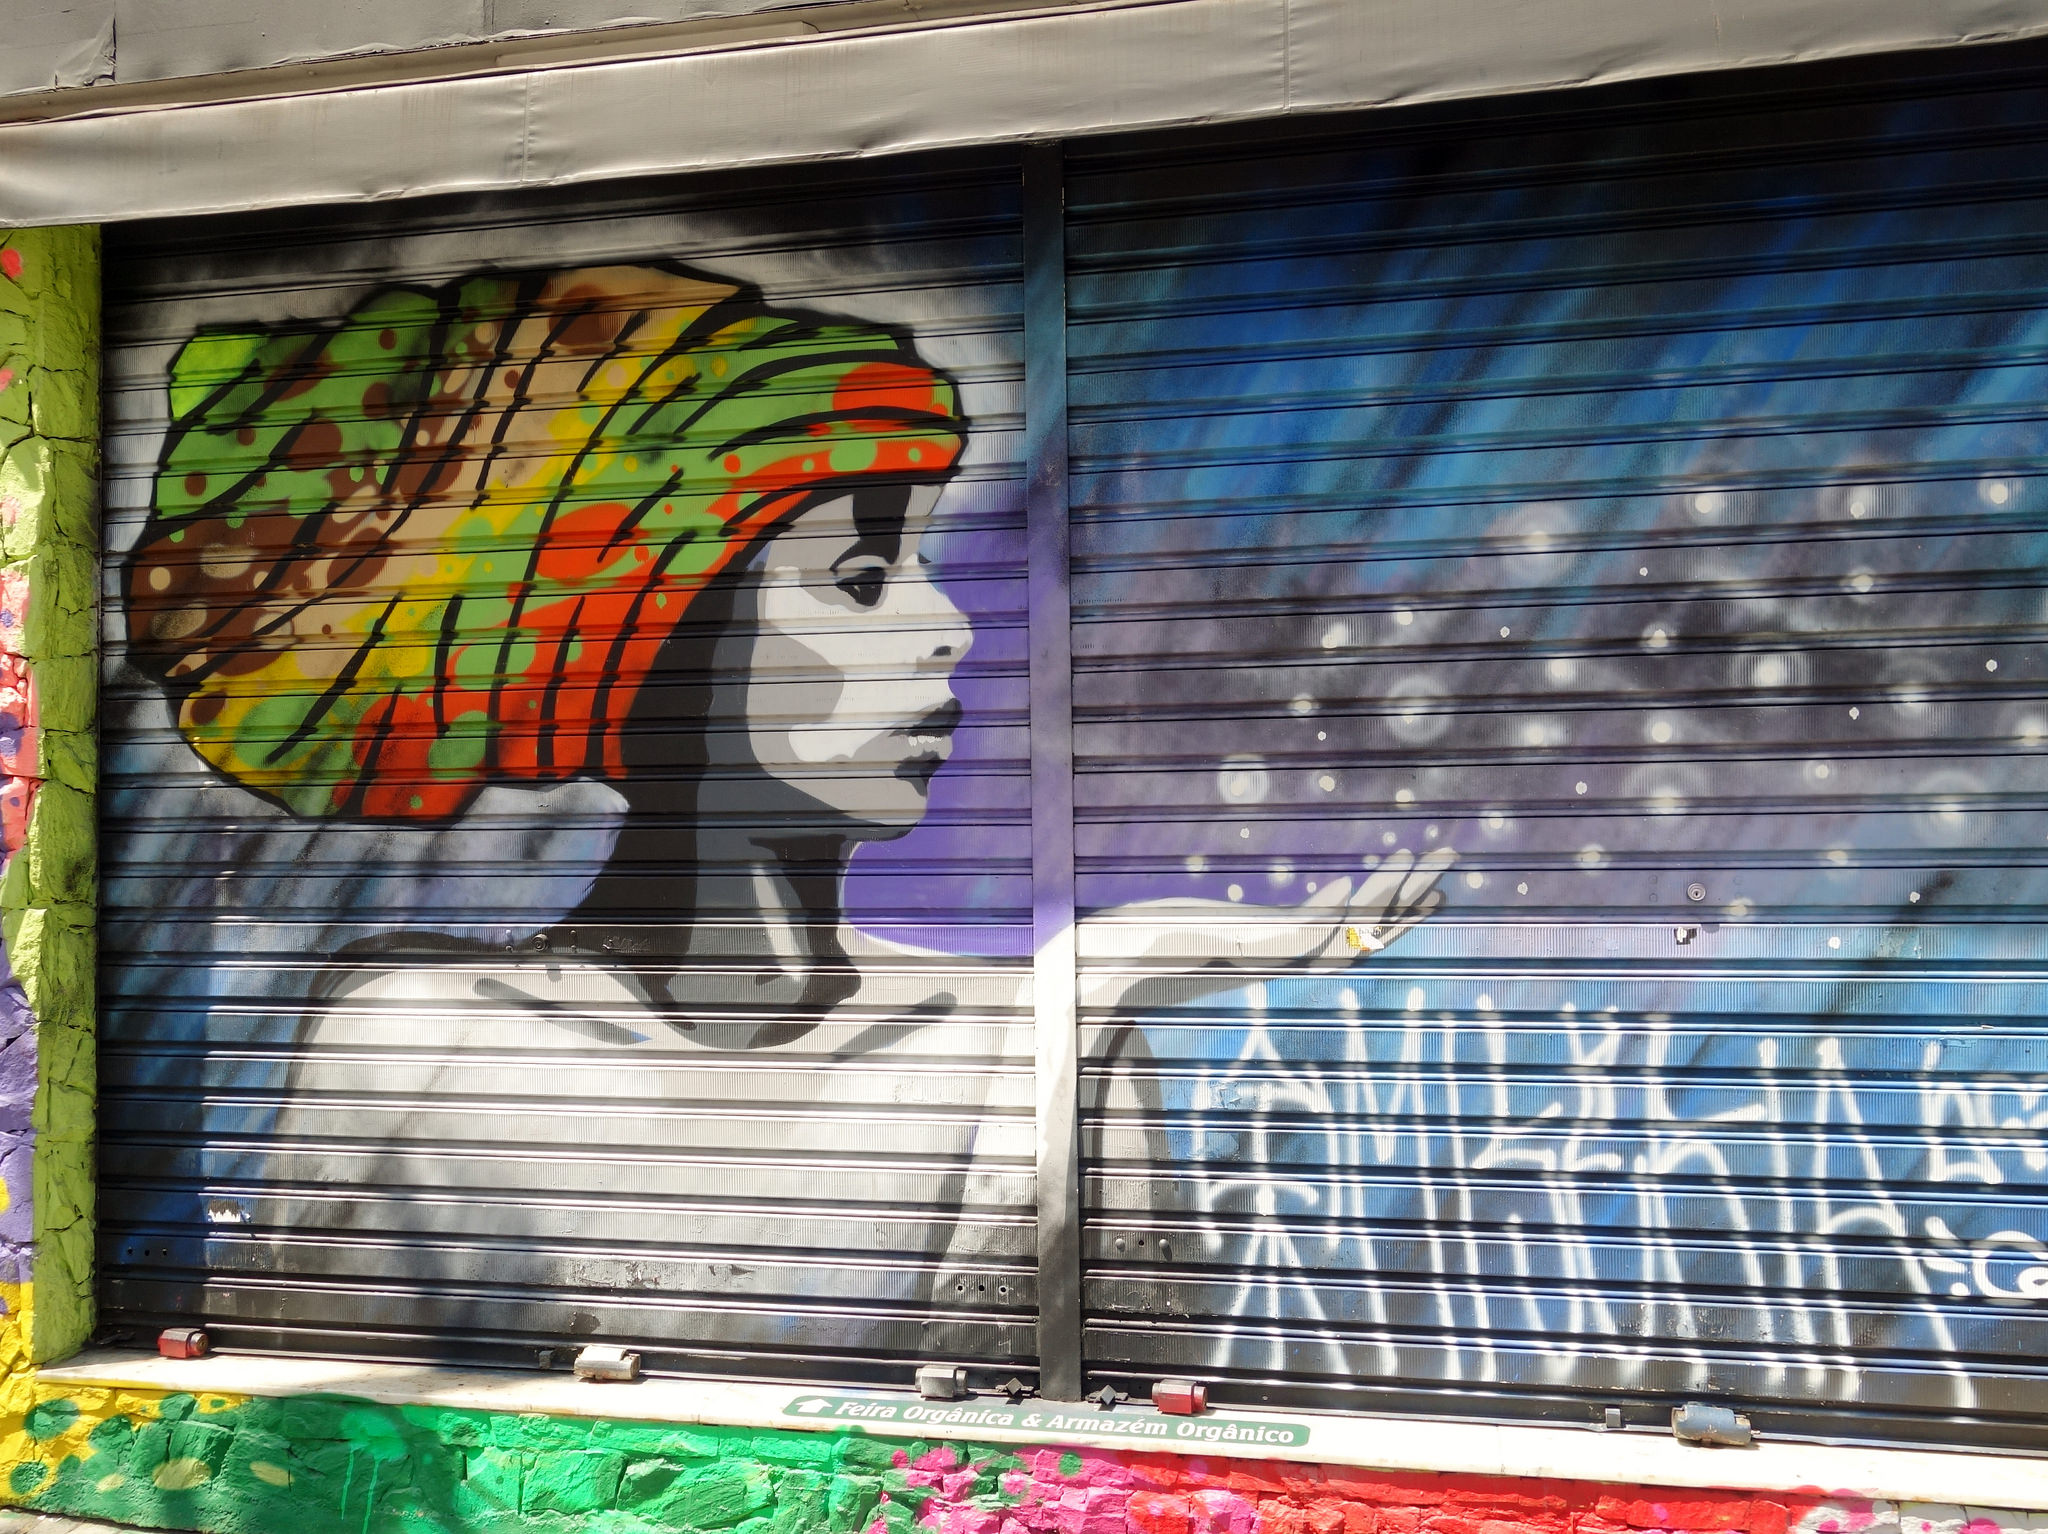 Arte de Rua em Sampa, Street Art em São Paulo/Foto: J Goncalves